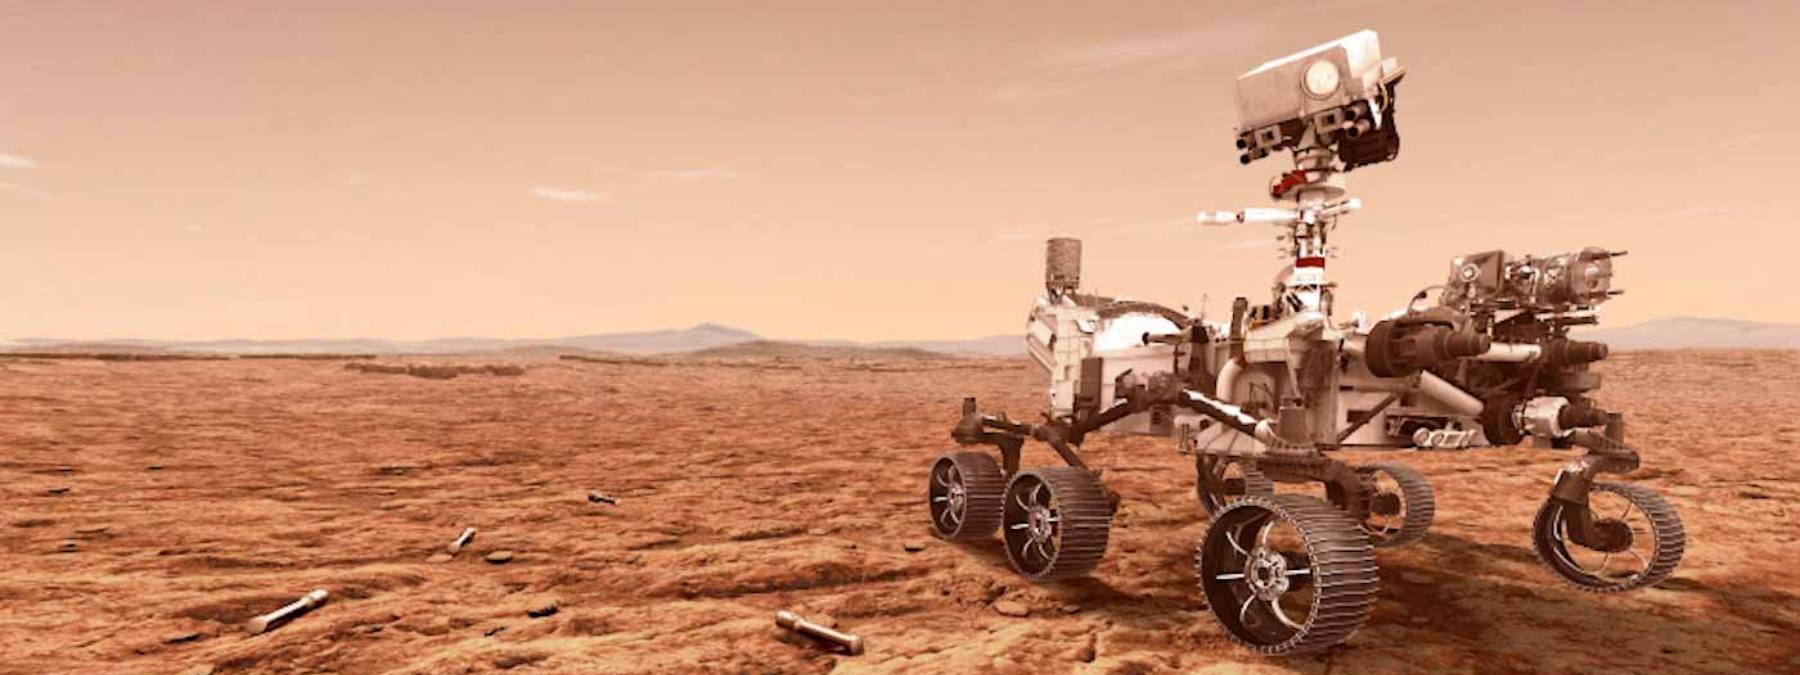 El rover Perseverance Mars